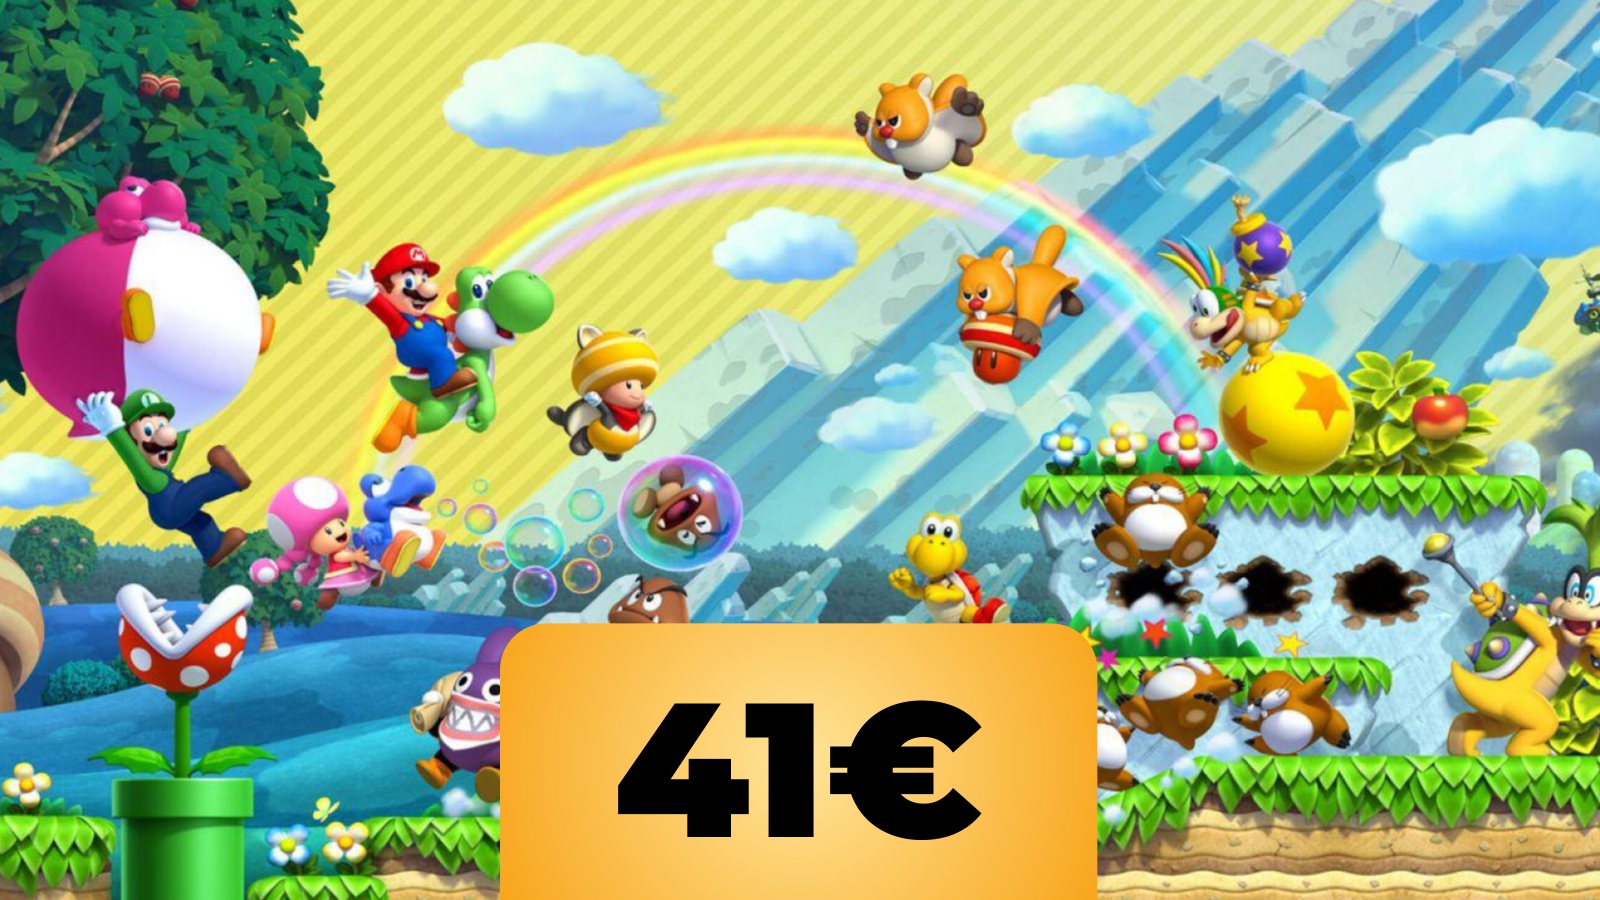 New Super Mario Bros. U Deluxe per Nintendo Switch al prezzo più basso su Amazon Italia